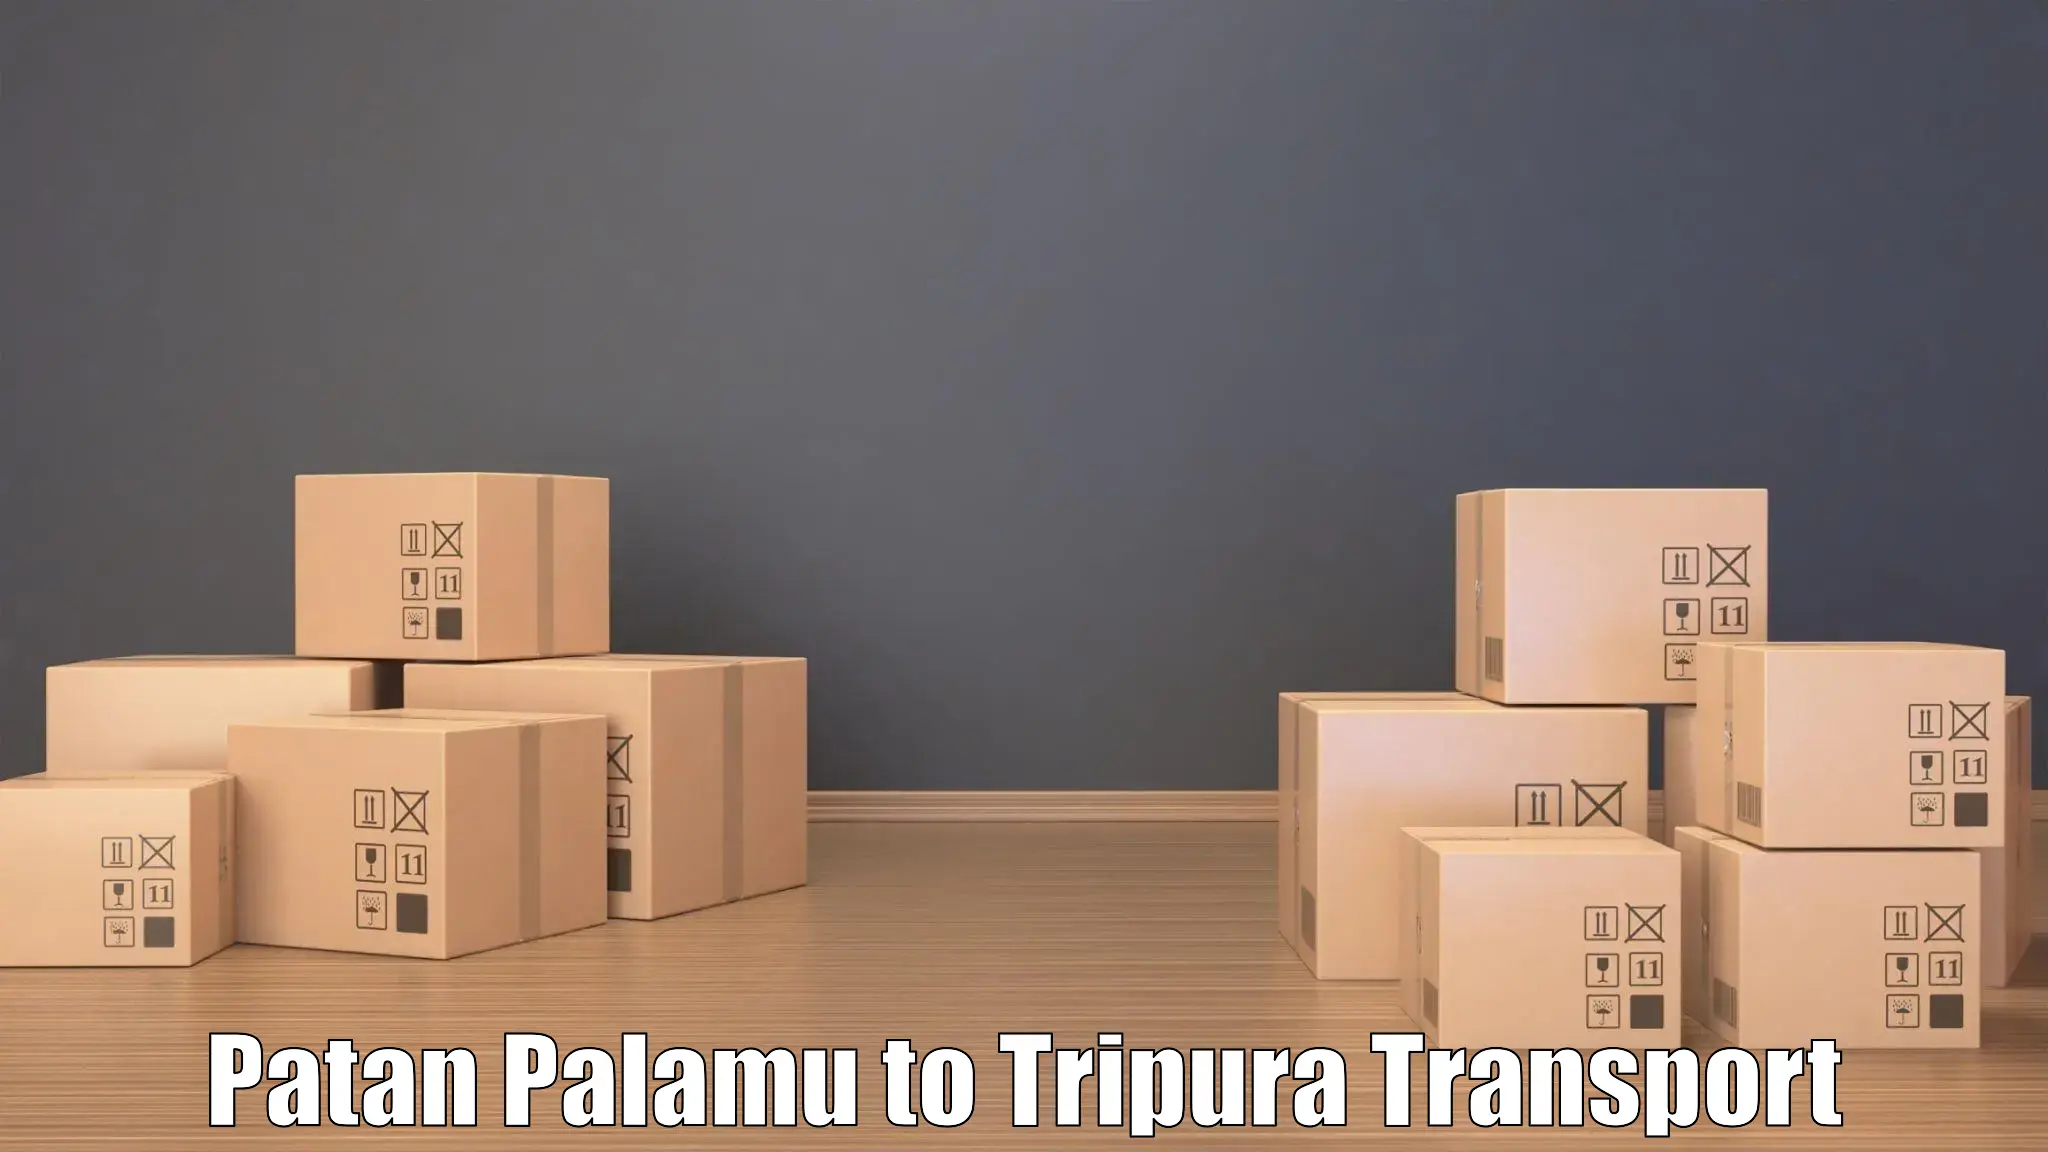 Online transport booking Patan Palamu to NIT Agartala